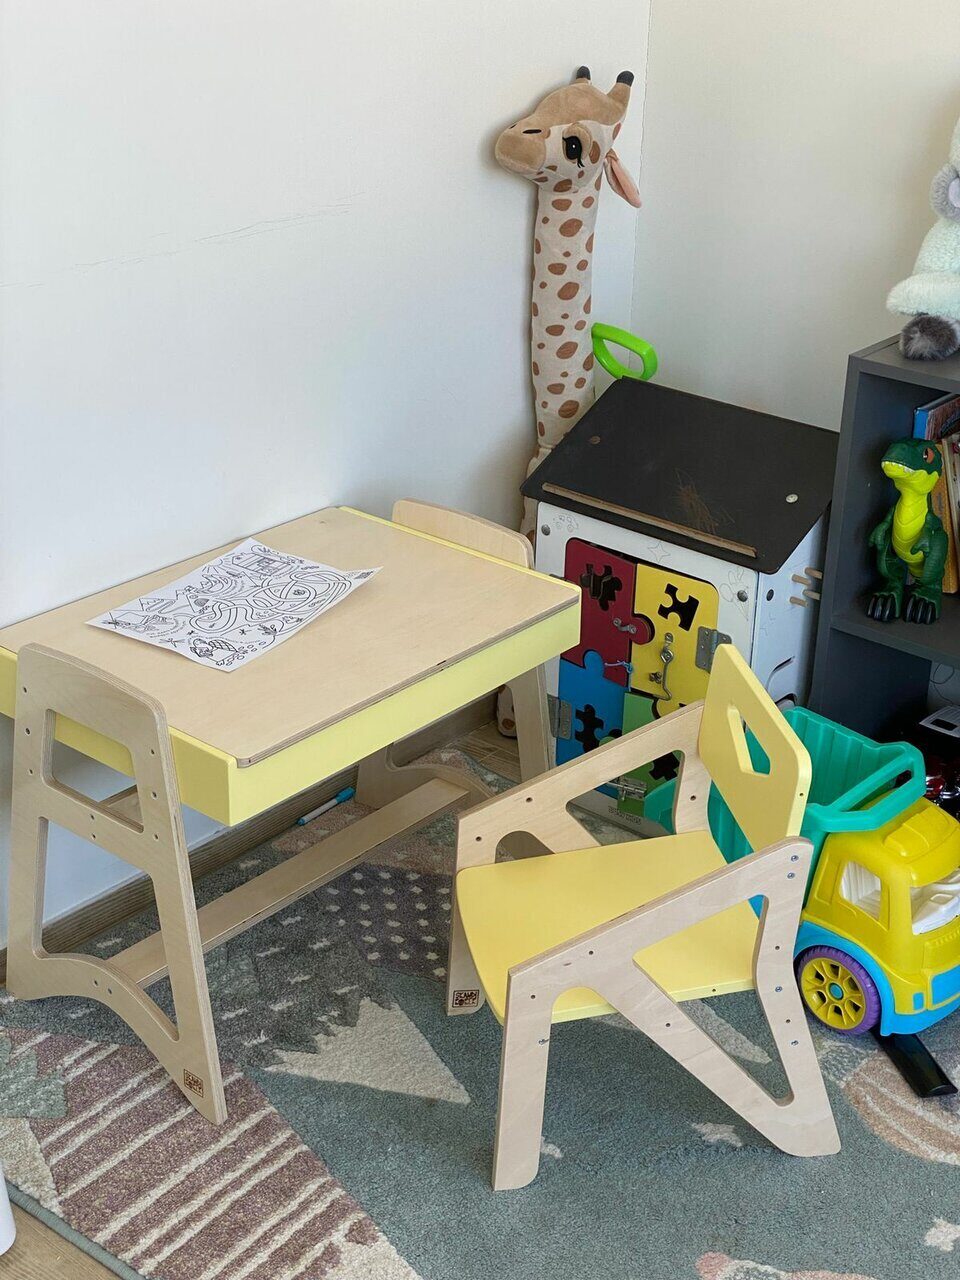 Желтый стул у ребенка 3 года